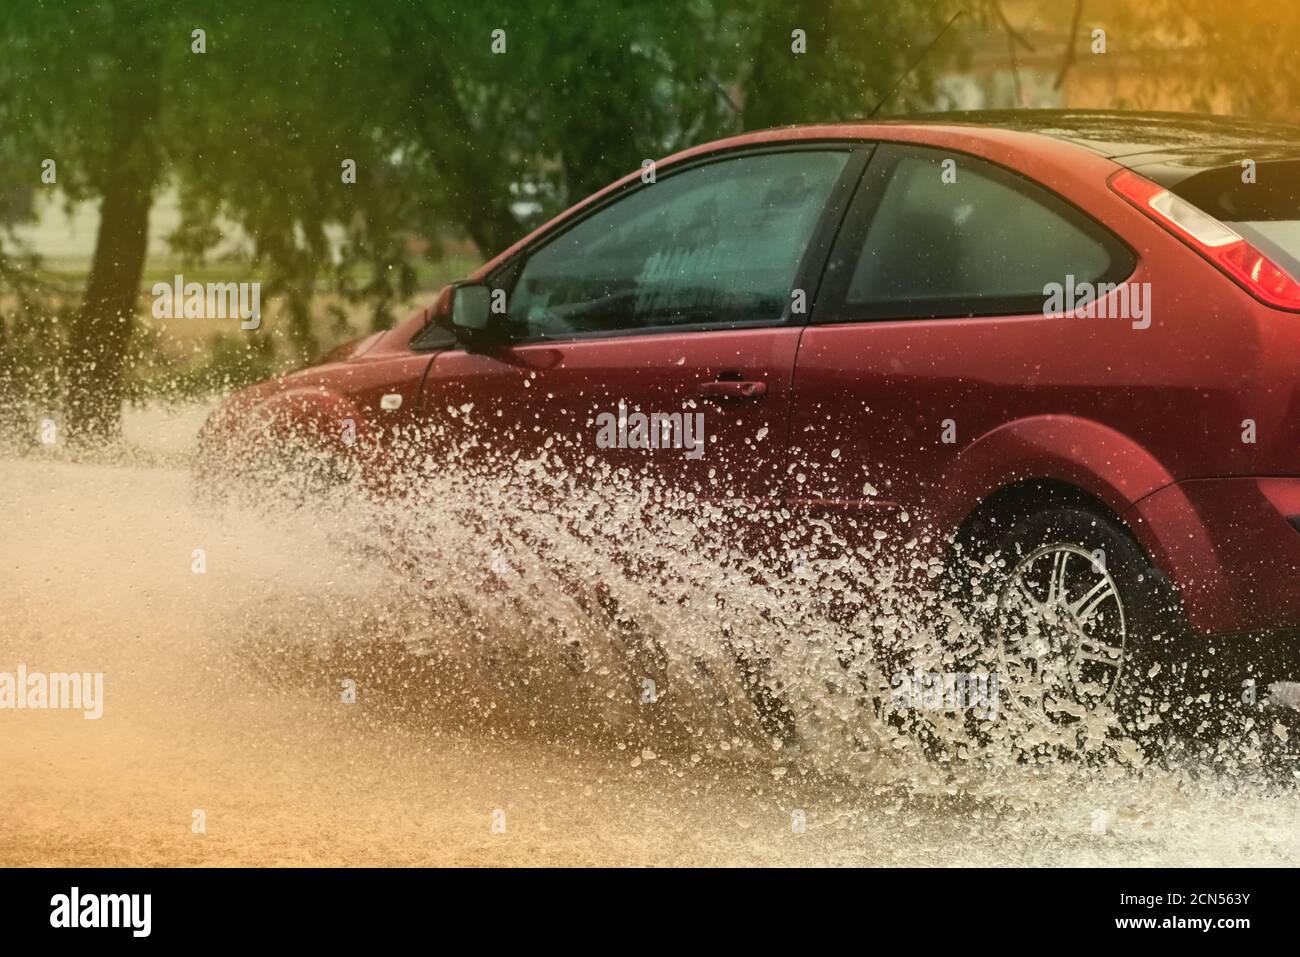 Les projections d'eau flaque pluie voiture Banque D'Images